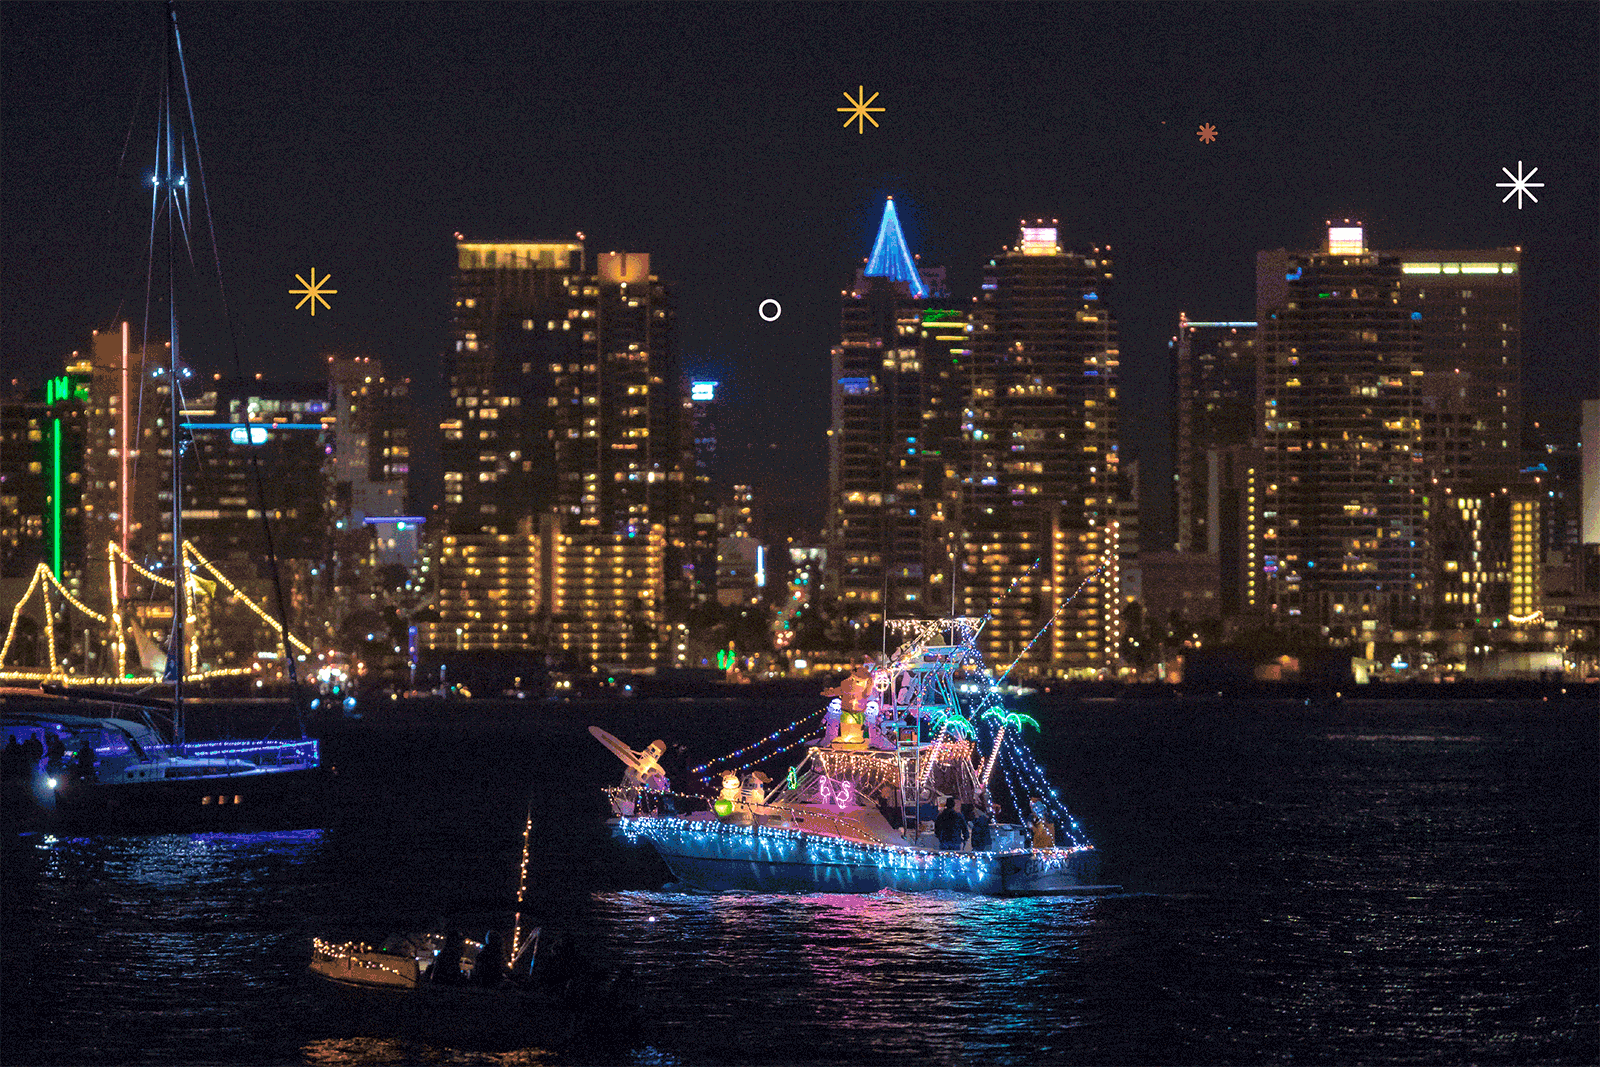 Veleros, yates y botes inflables iluminan la Bahía de San Diego durante el 48º Desfile de Luces anual de la Bahía de San Diego. Los fuegos artificiales animados iluminan el cielo.